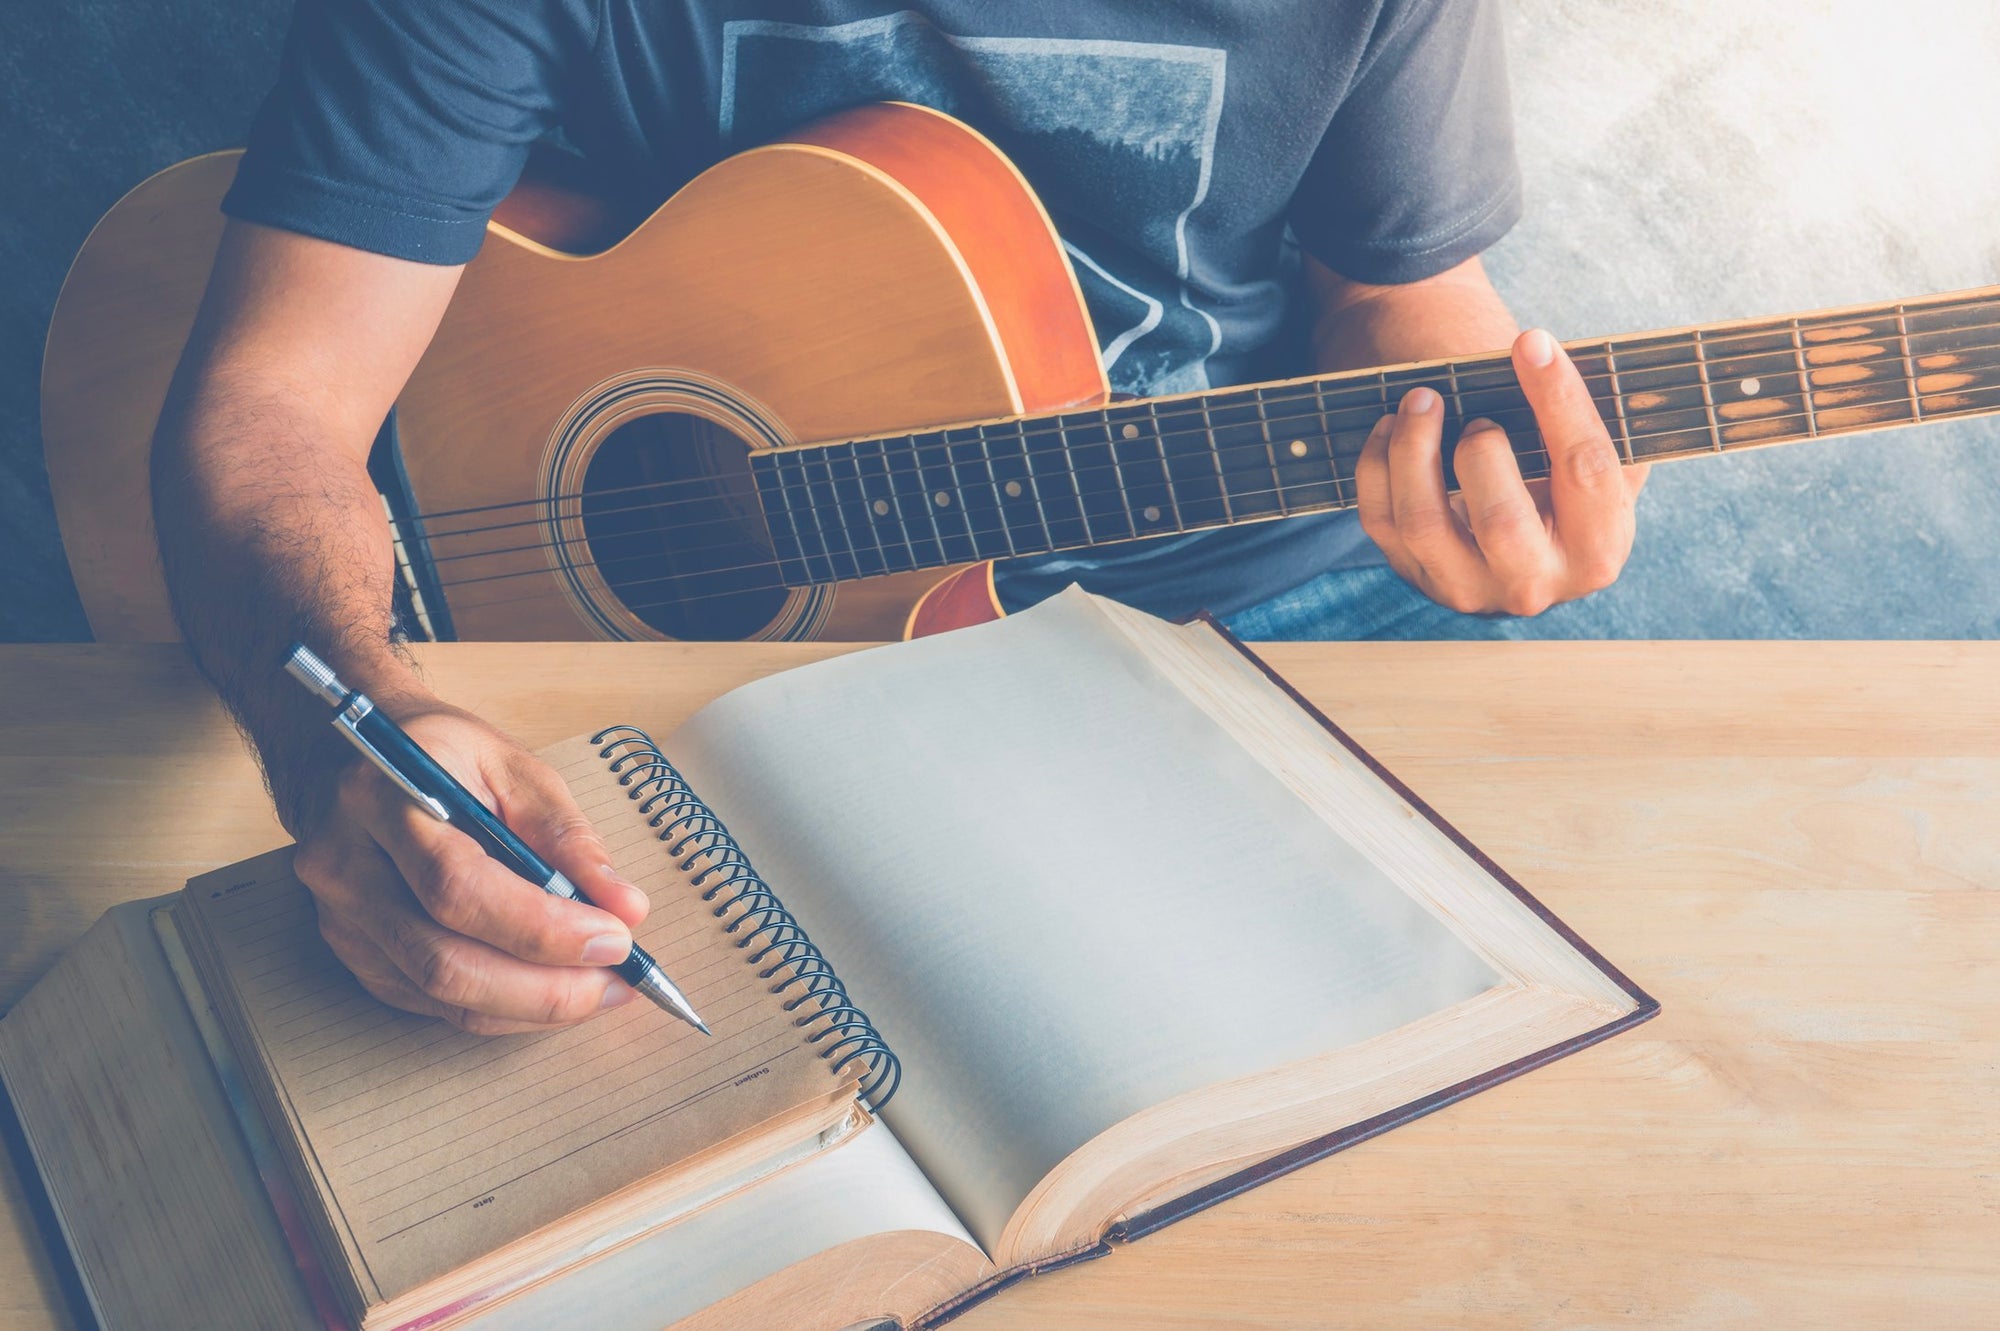 5 Tips for Writing Better Lyrics Faster